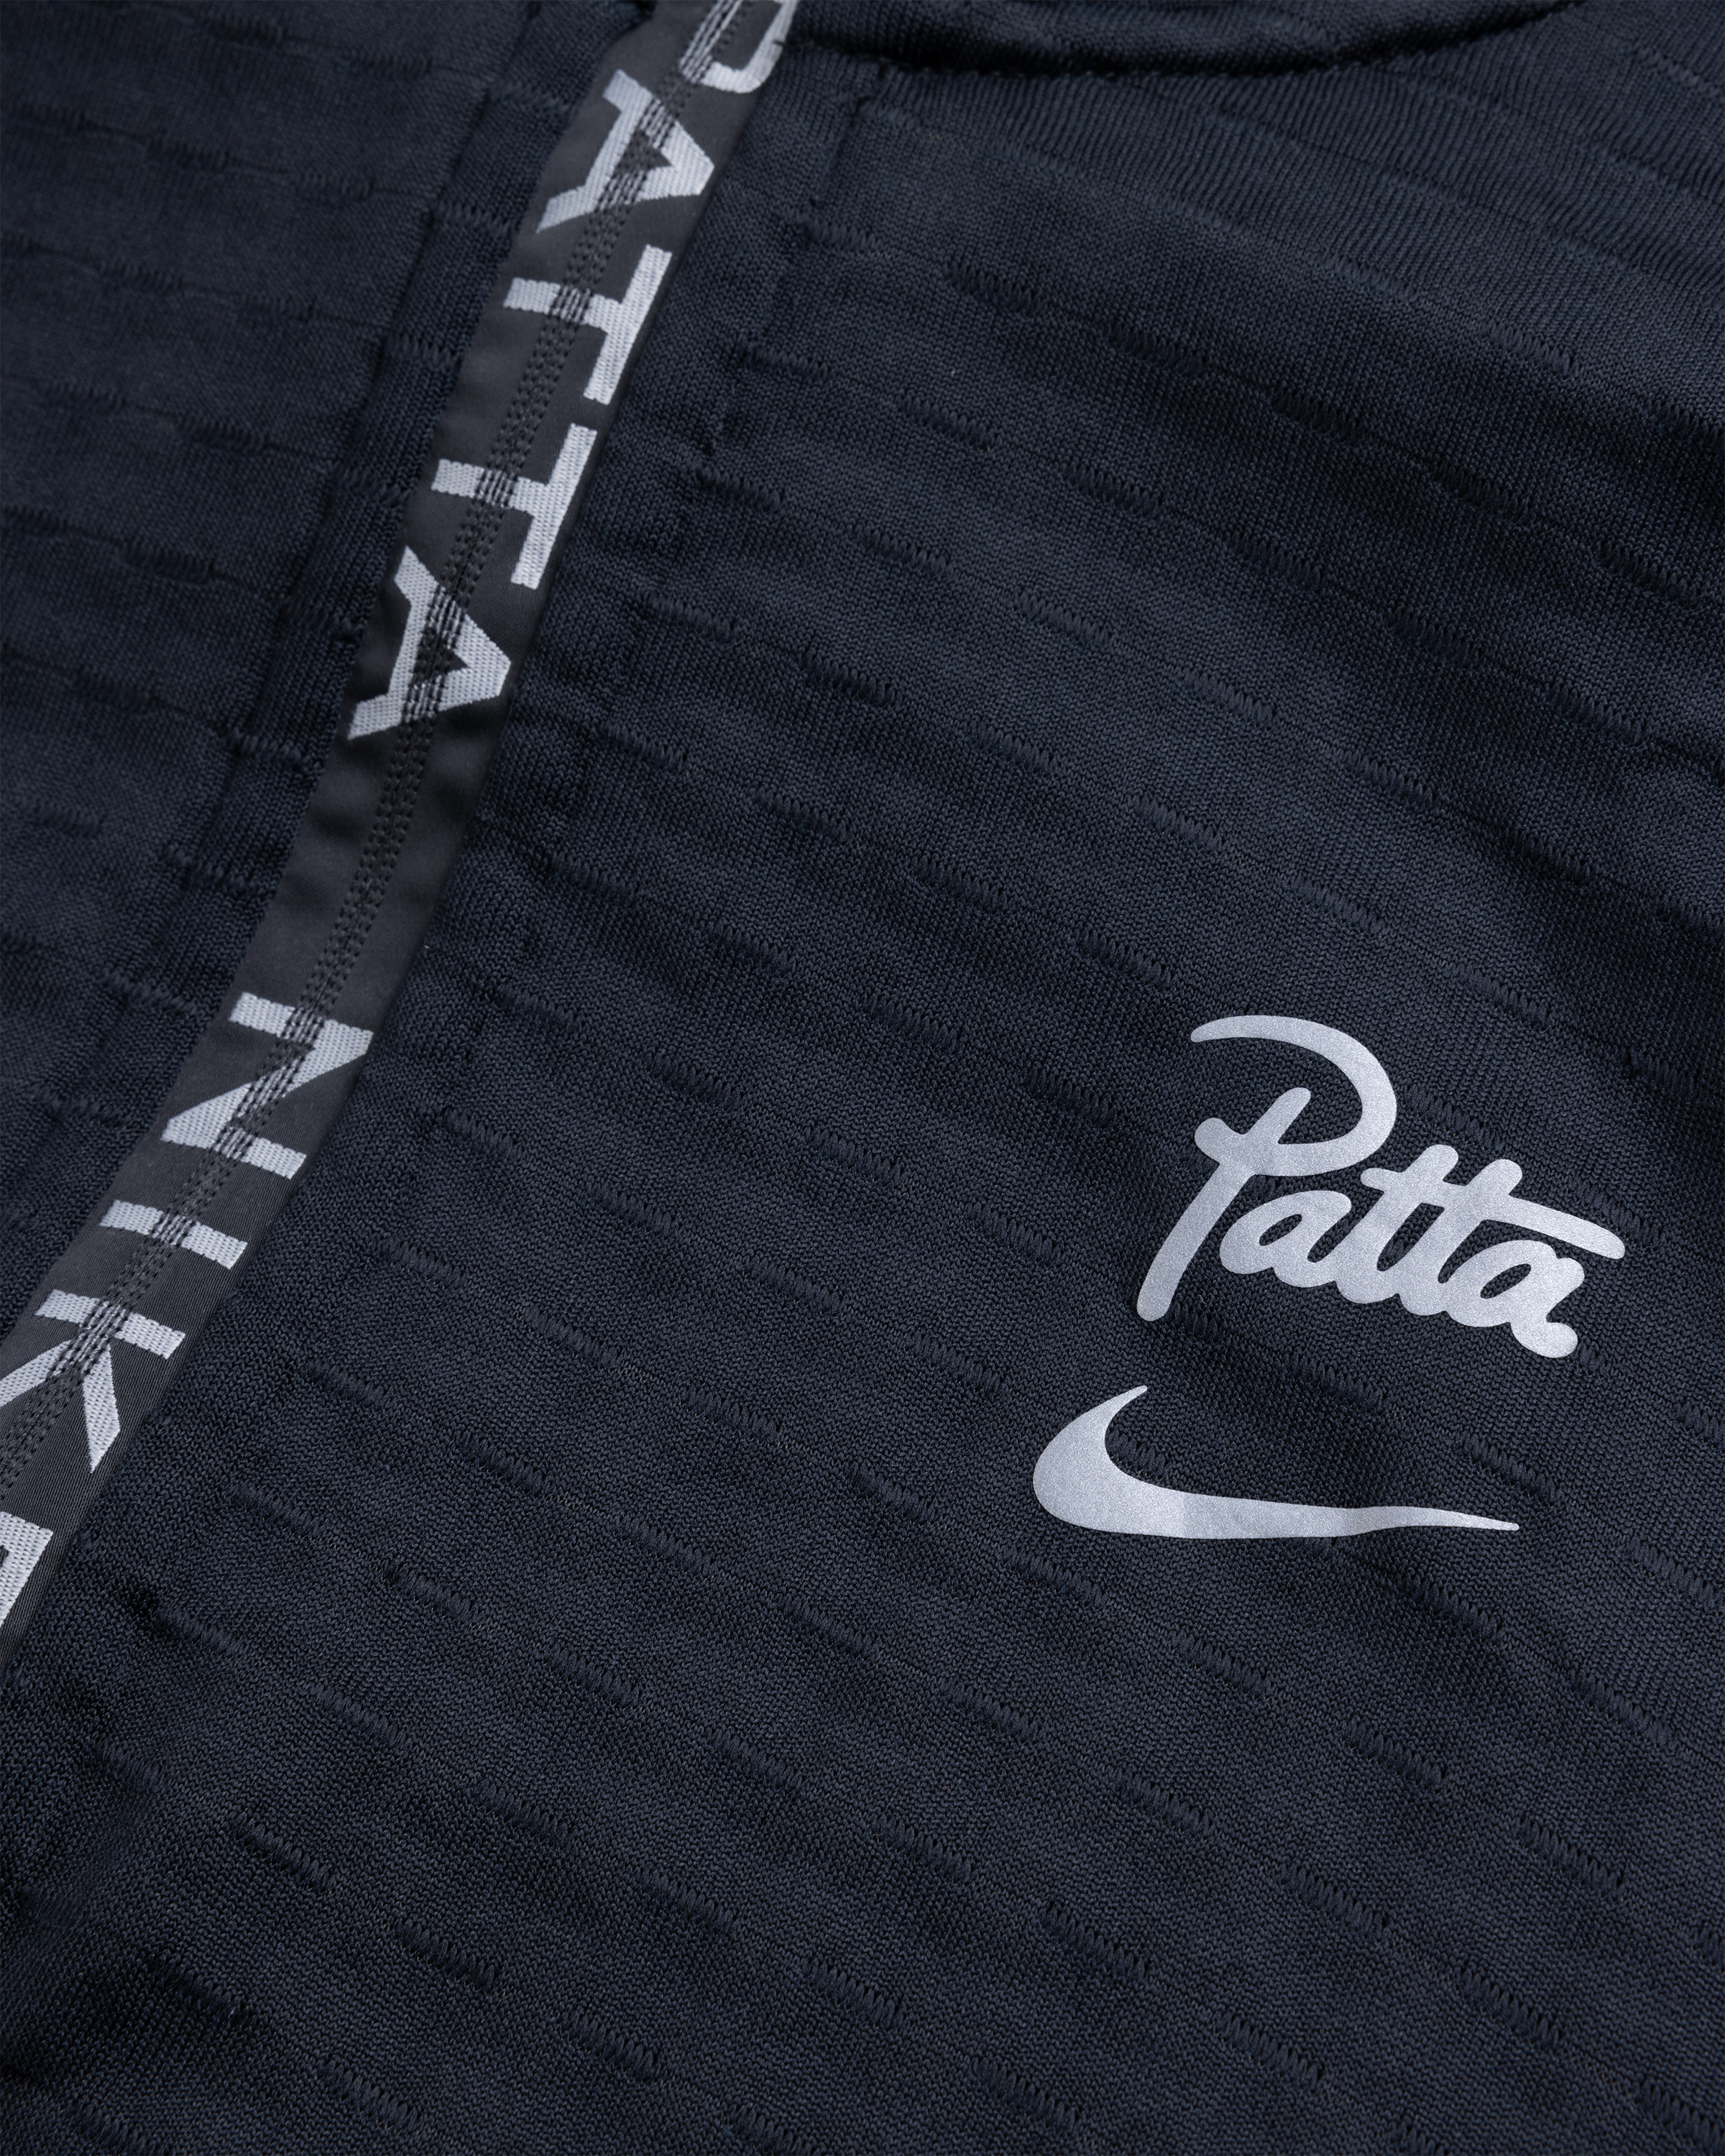 Nike x Patta – Half-Zip Long-Sleeve Top Black - Zip-Ups - Black - Image 7